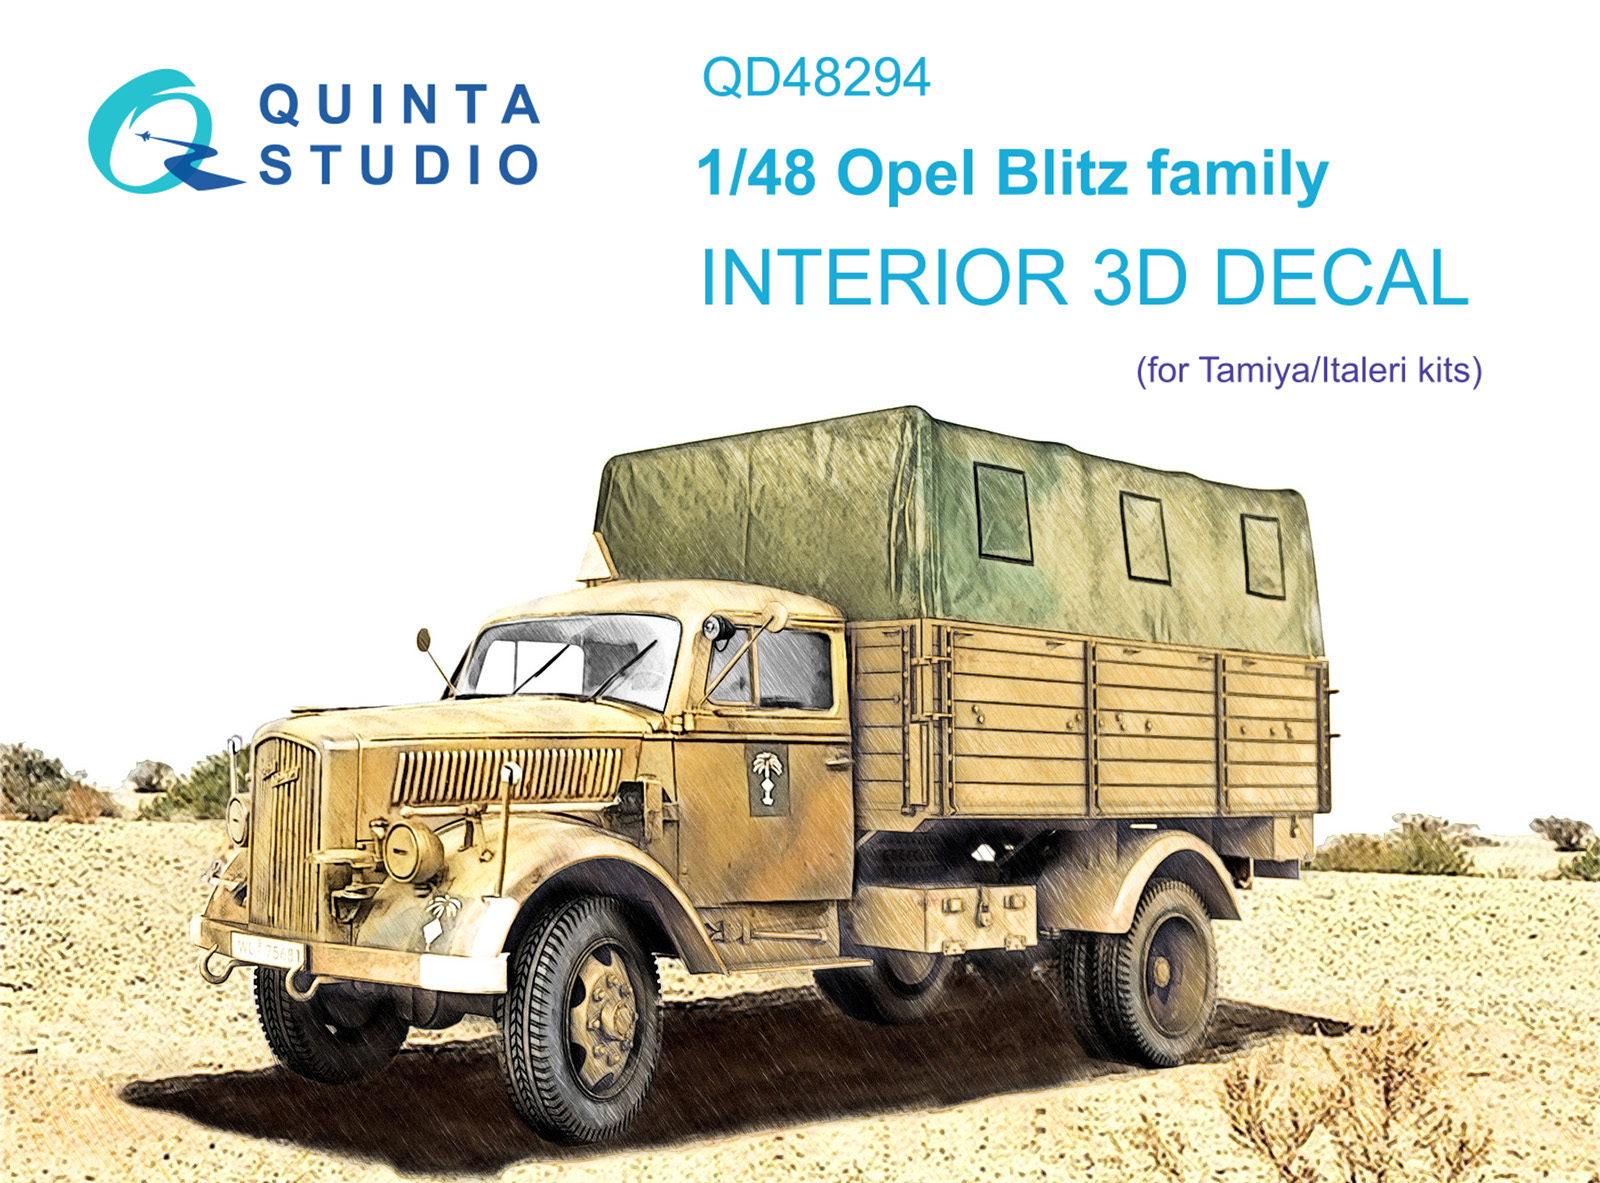 QD48294  декали  3D Декаль интерьера кабины семейство Opel Blitz (Tamiya/Italeri)  (1:48)